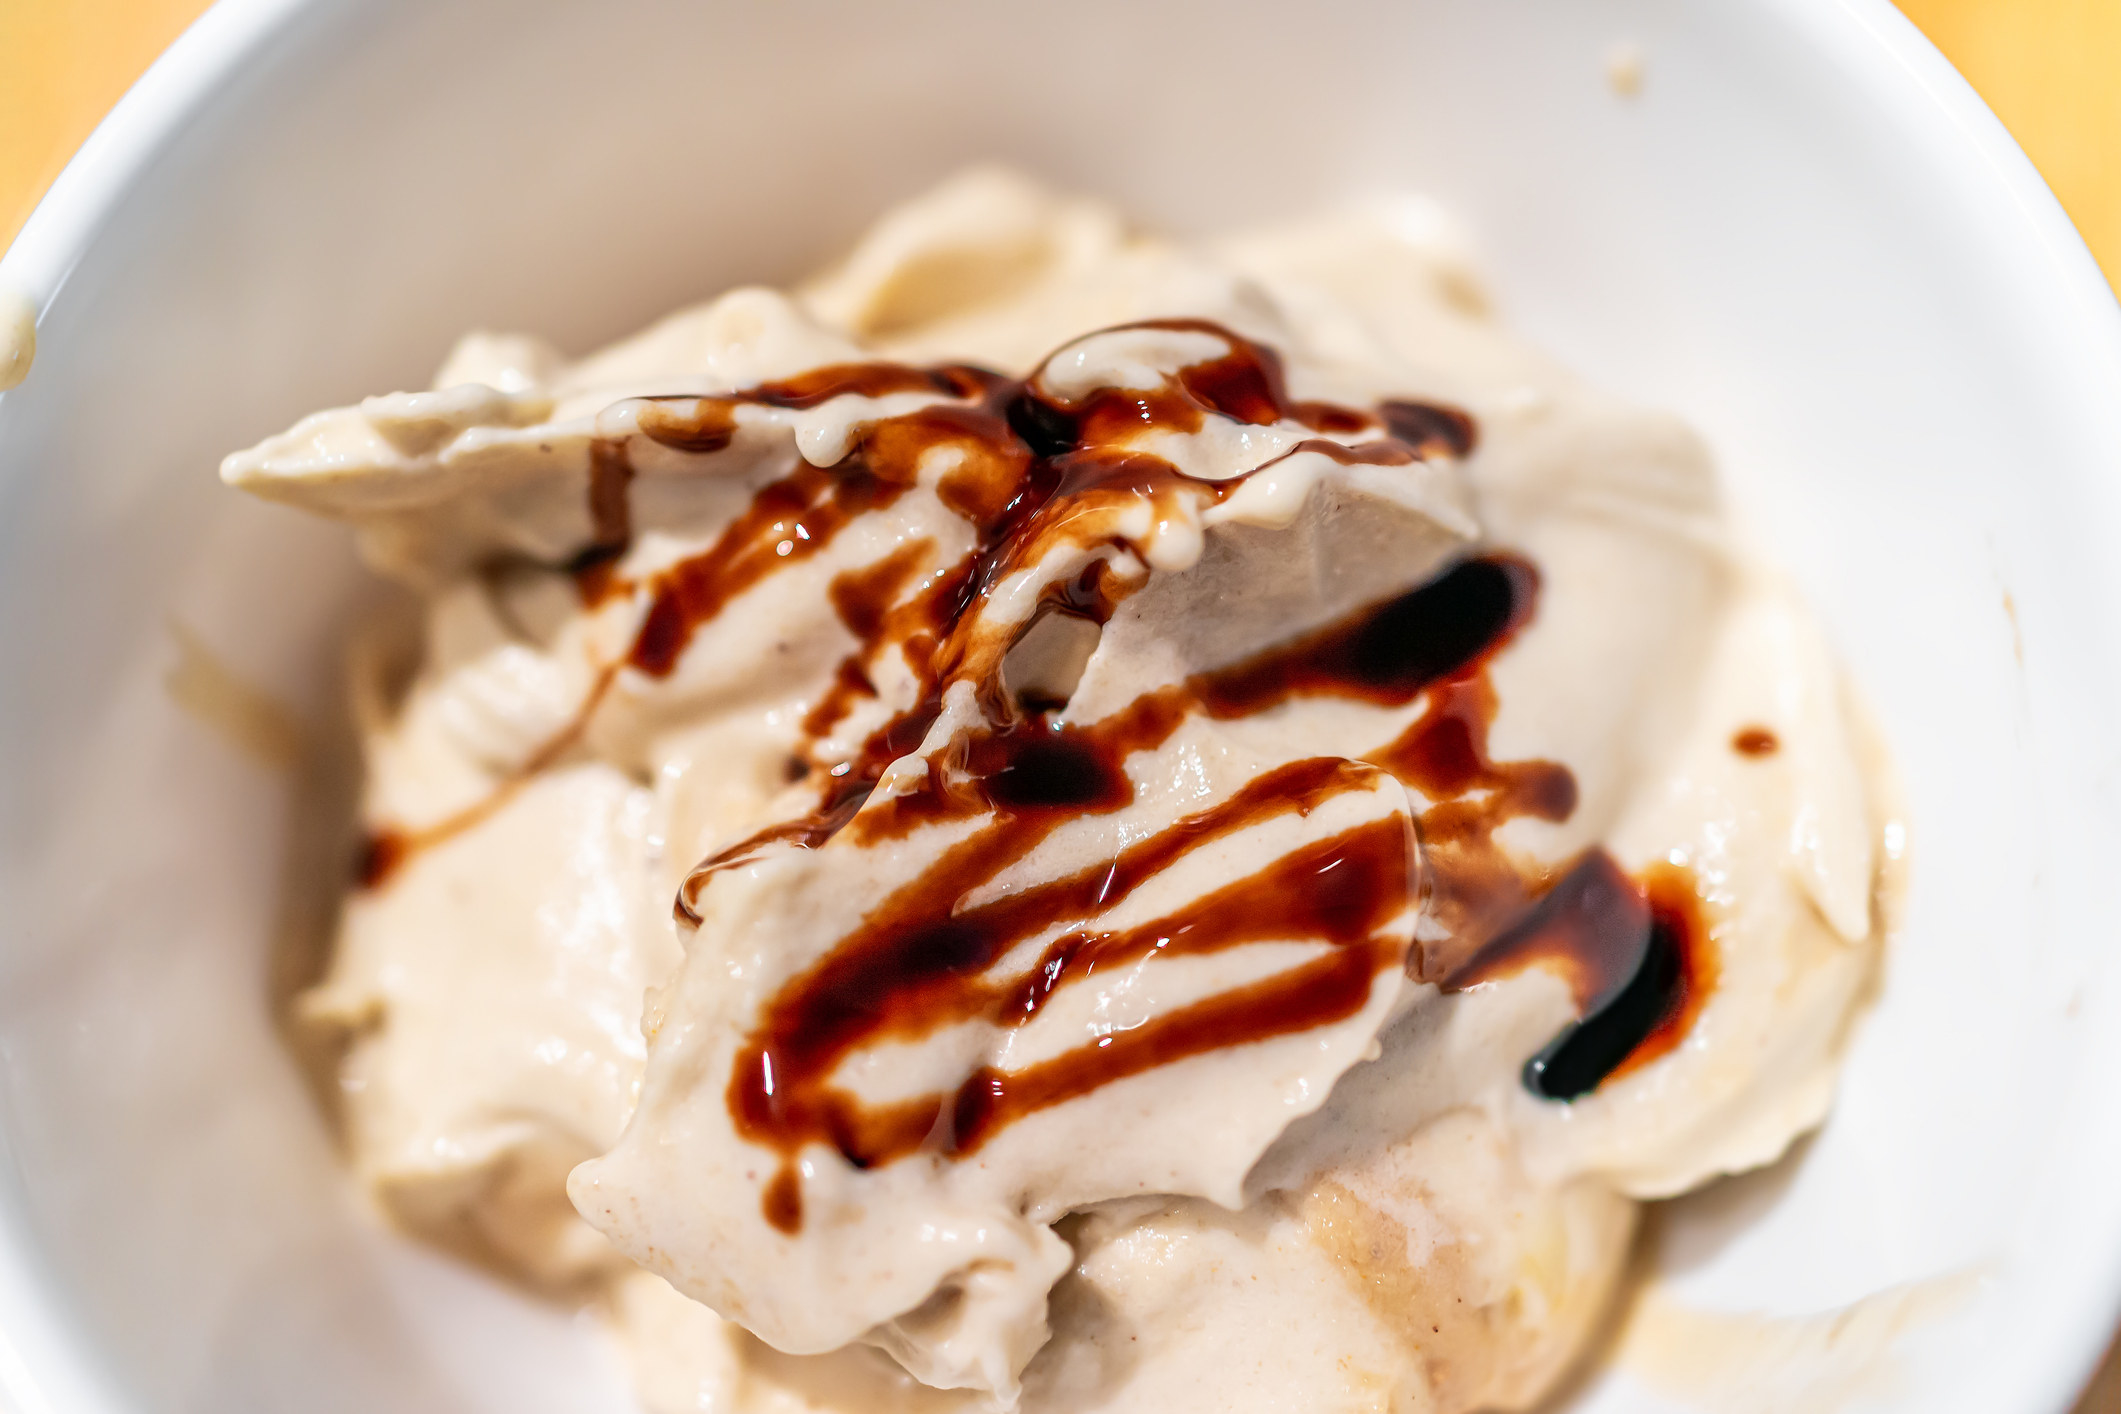 Soft serve vanilla ice cream with balsamic vinegar drizzle.